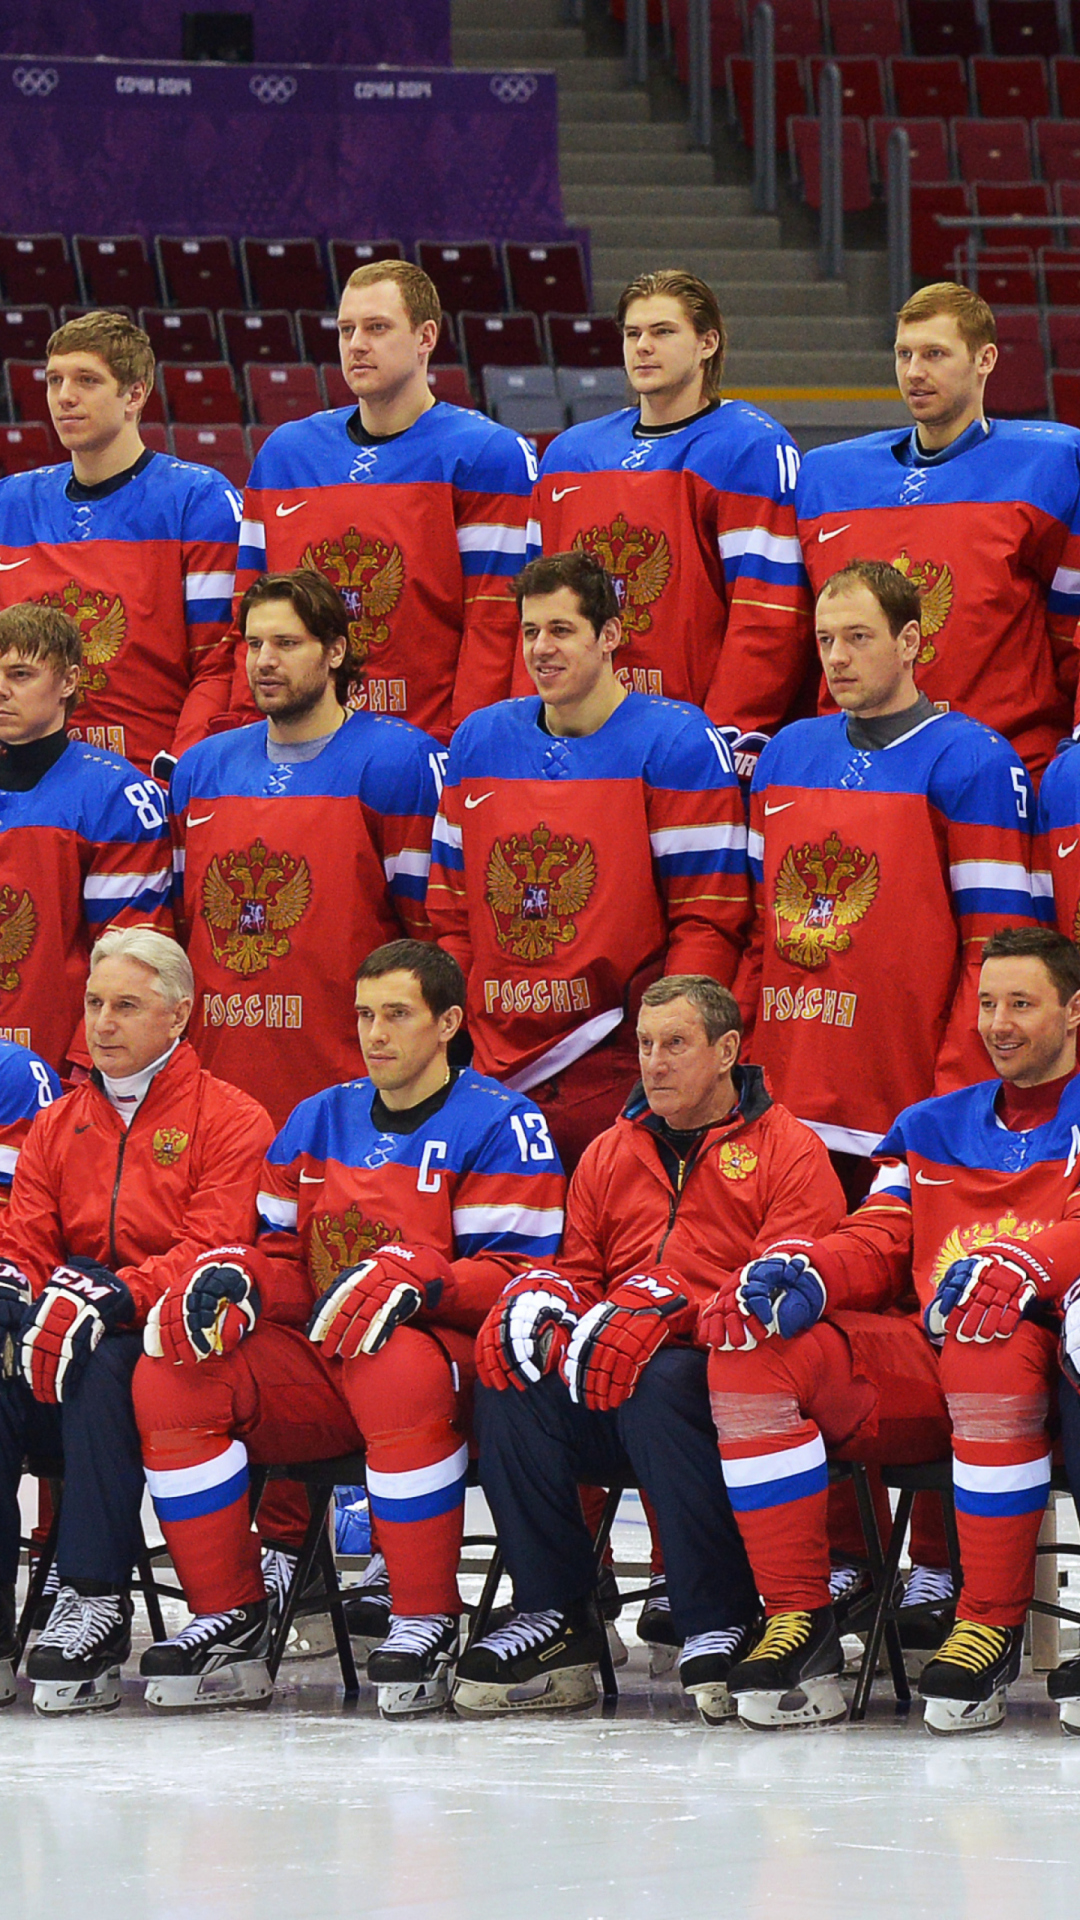 Russian Hockey Team Sochi 2014 wallpaper 1080x1920